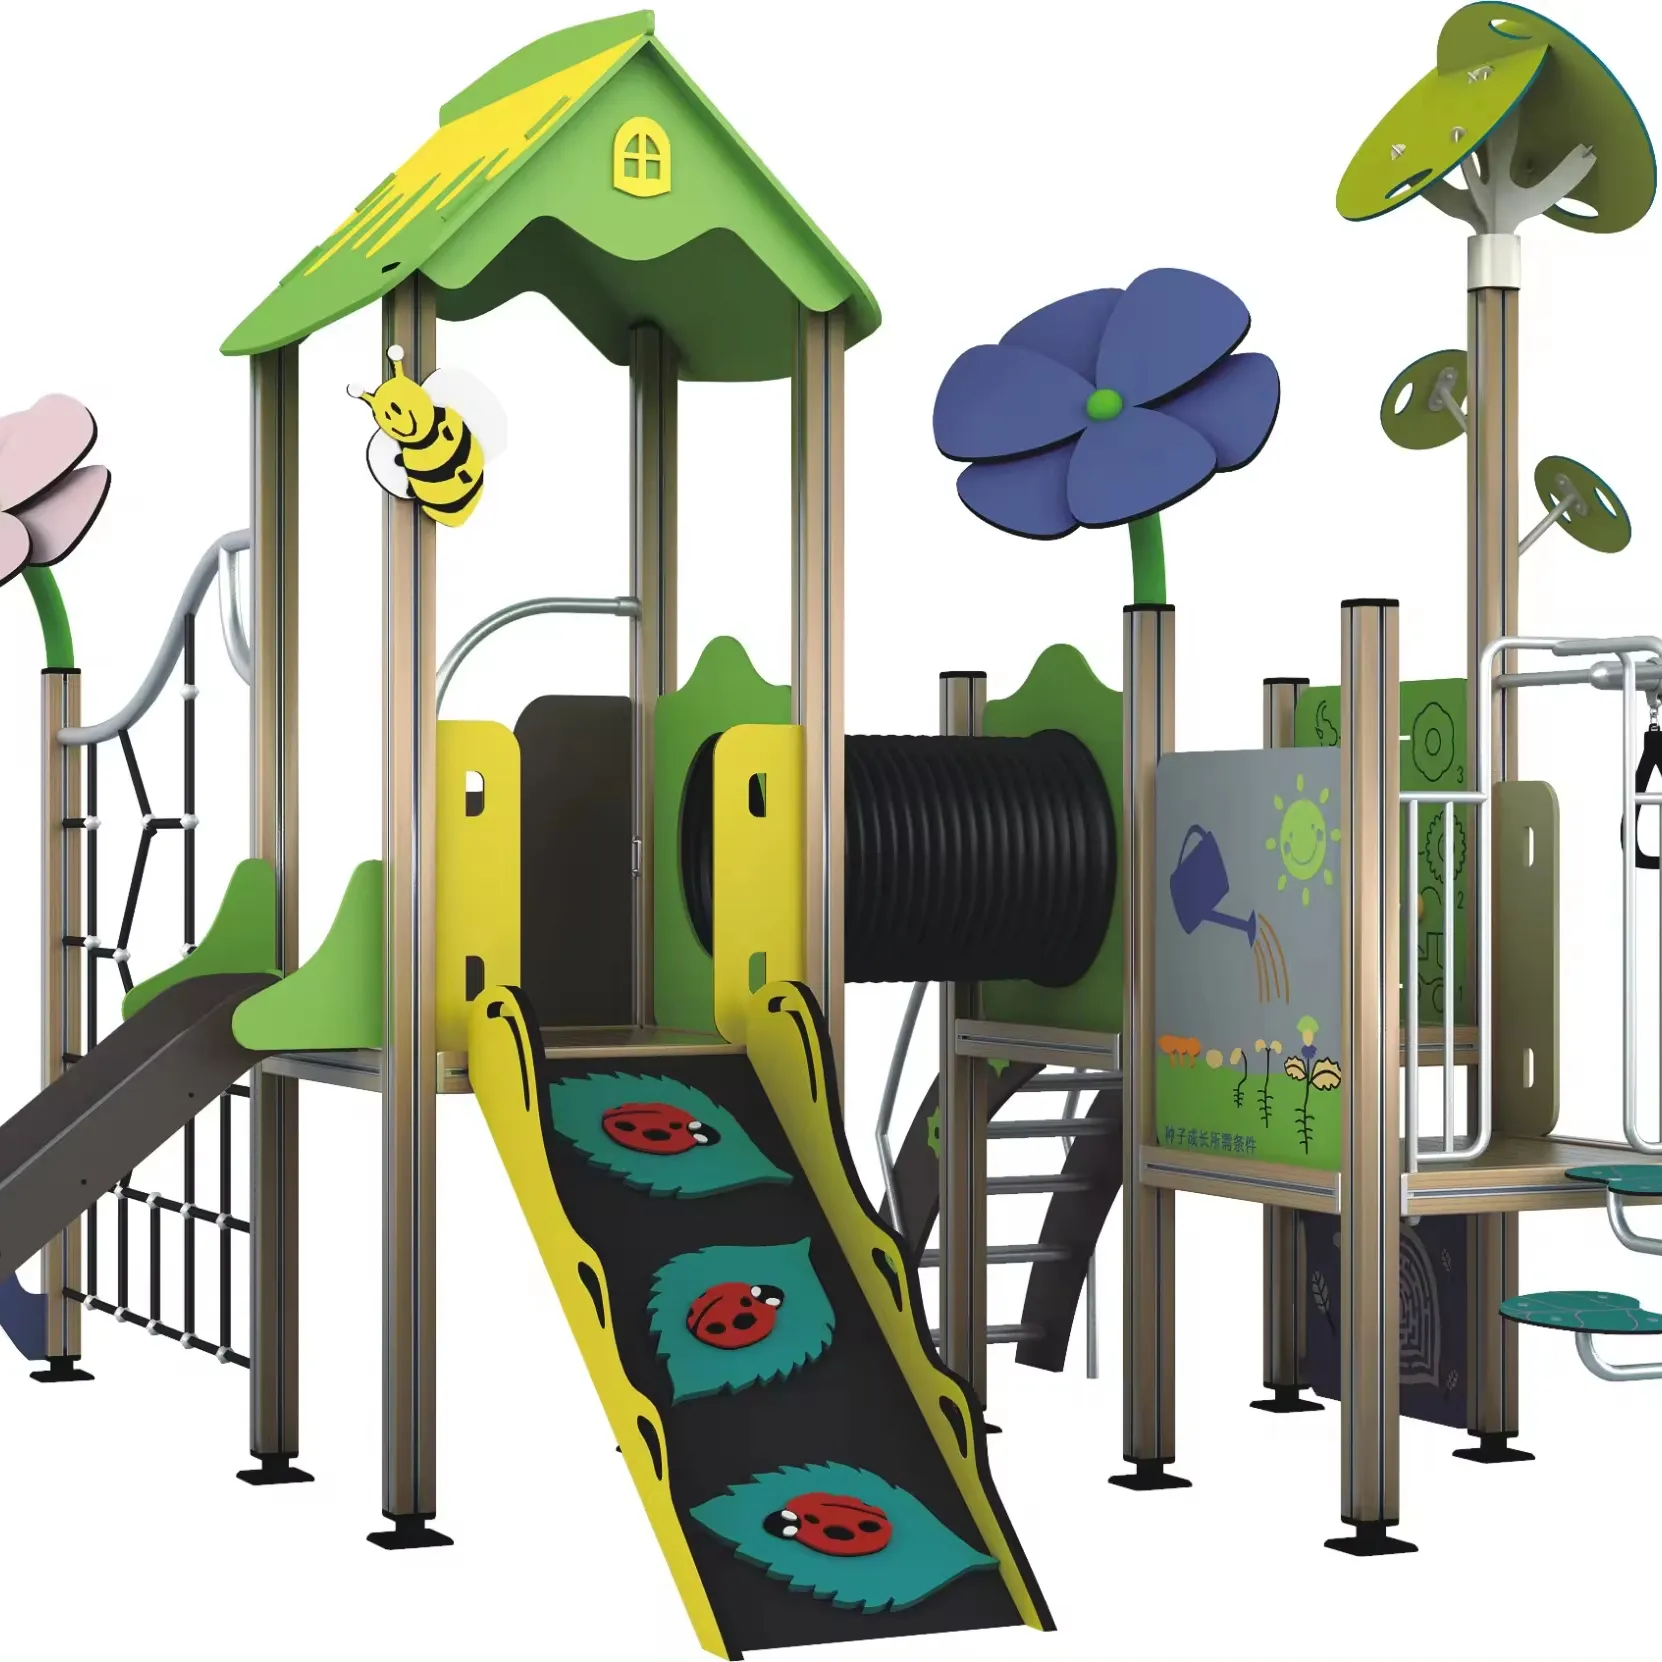 WPC пейзаж открытая игровая площадка Природа тема с обезьяной бар для детей, чтобы играть в парке развлечений